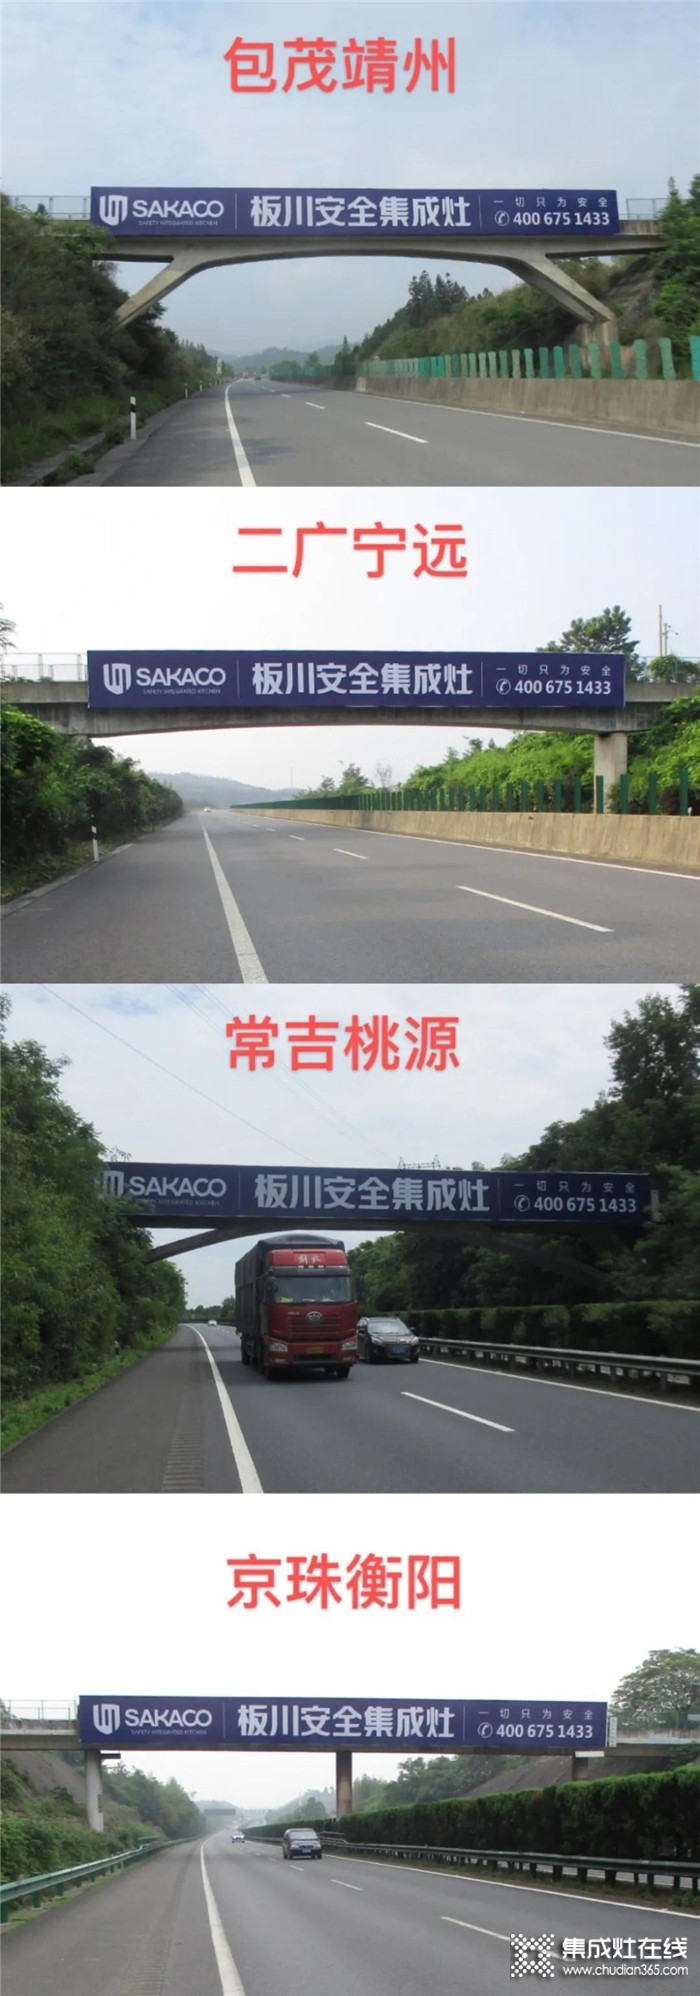 板川高速大型广告牌，第一期正式上线！实力打造中国安全集成灶领导品牌！